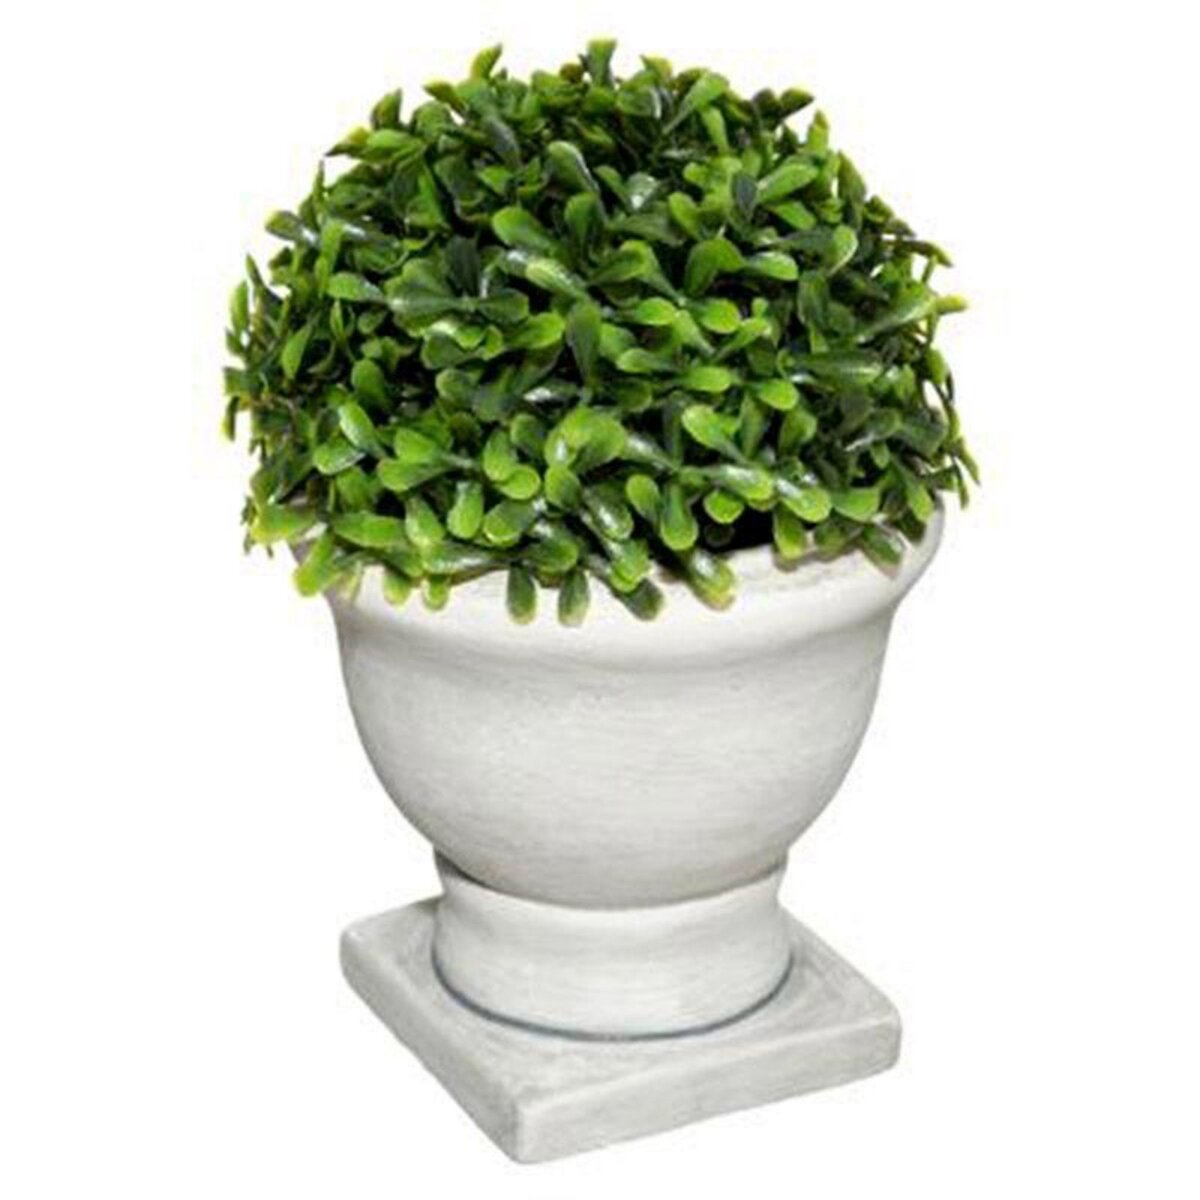  Plante Artificielle en Pot  Buis  19cm Blanc & Vert